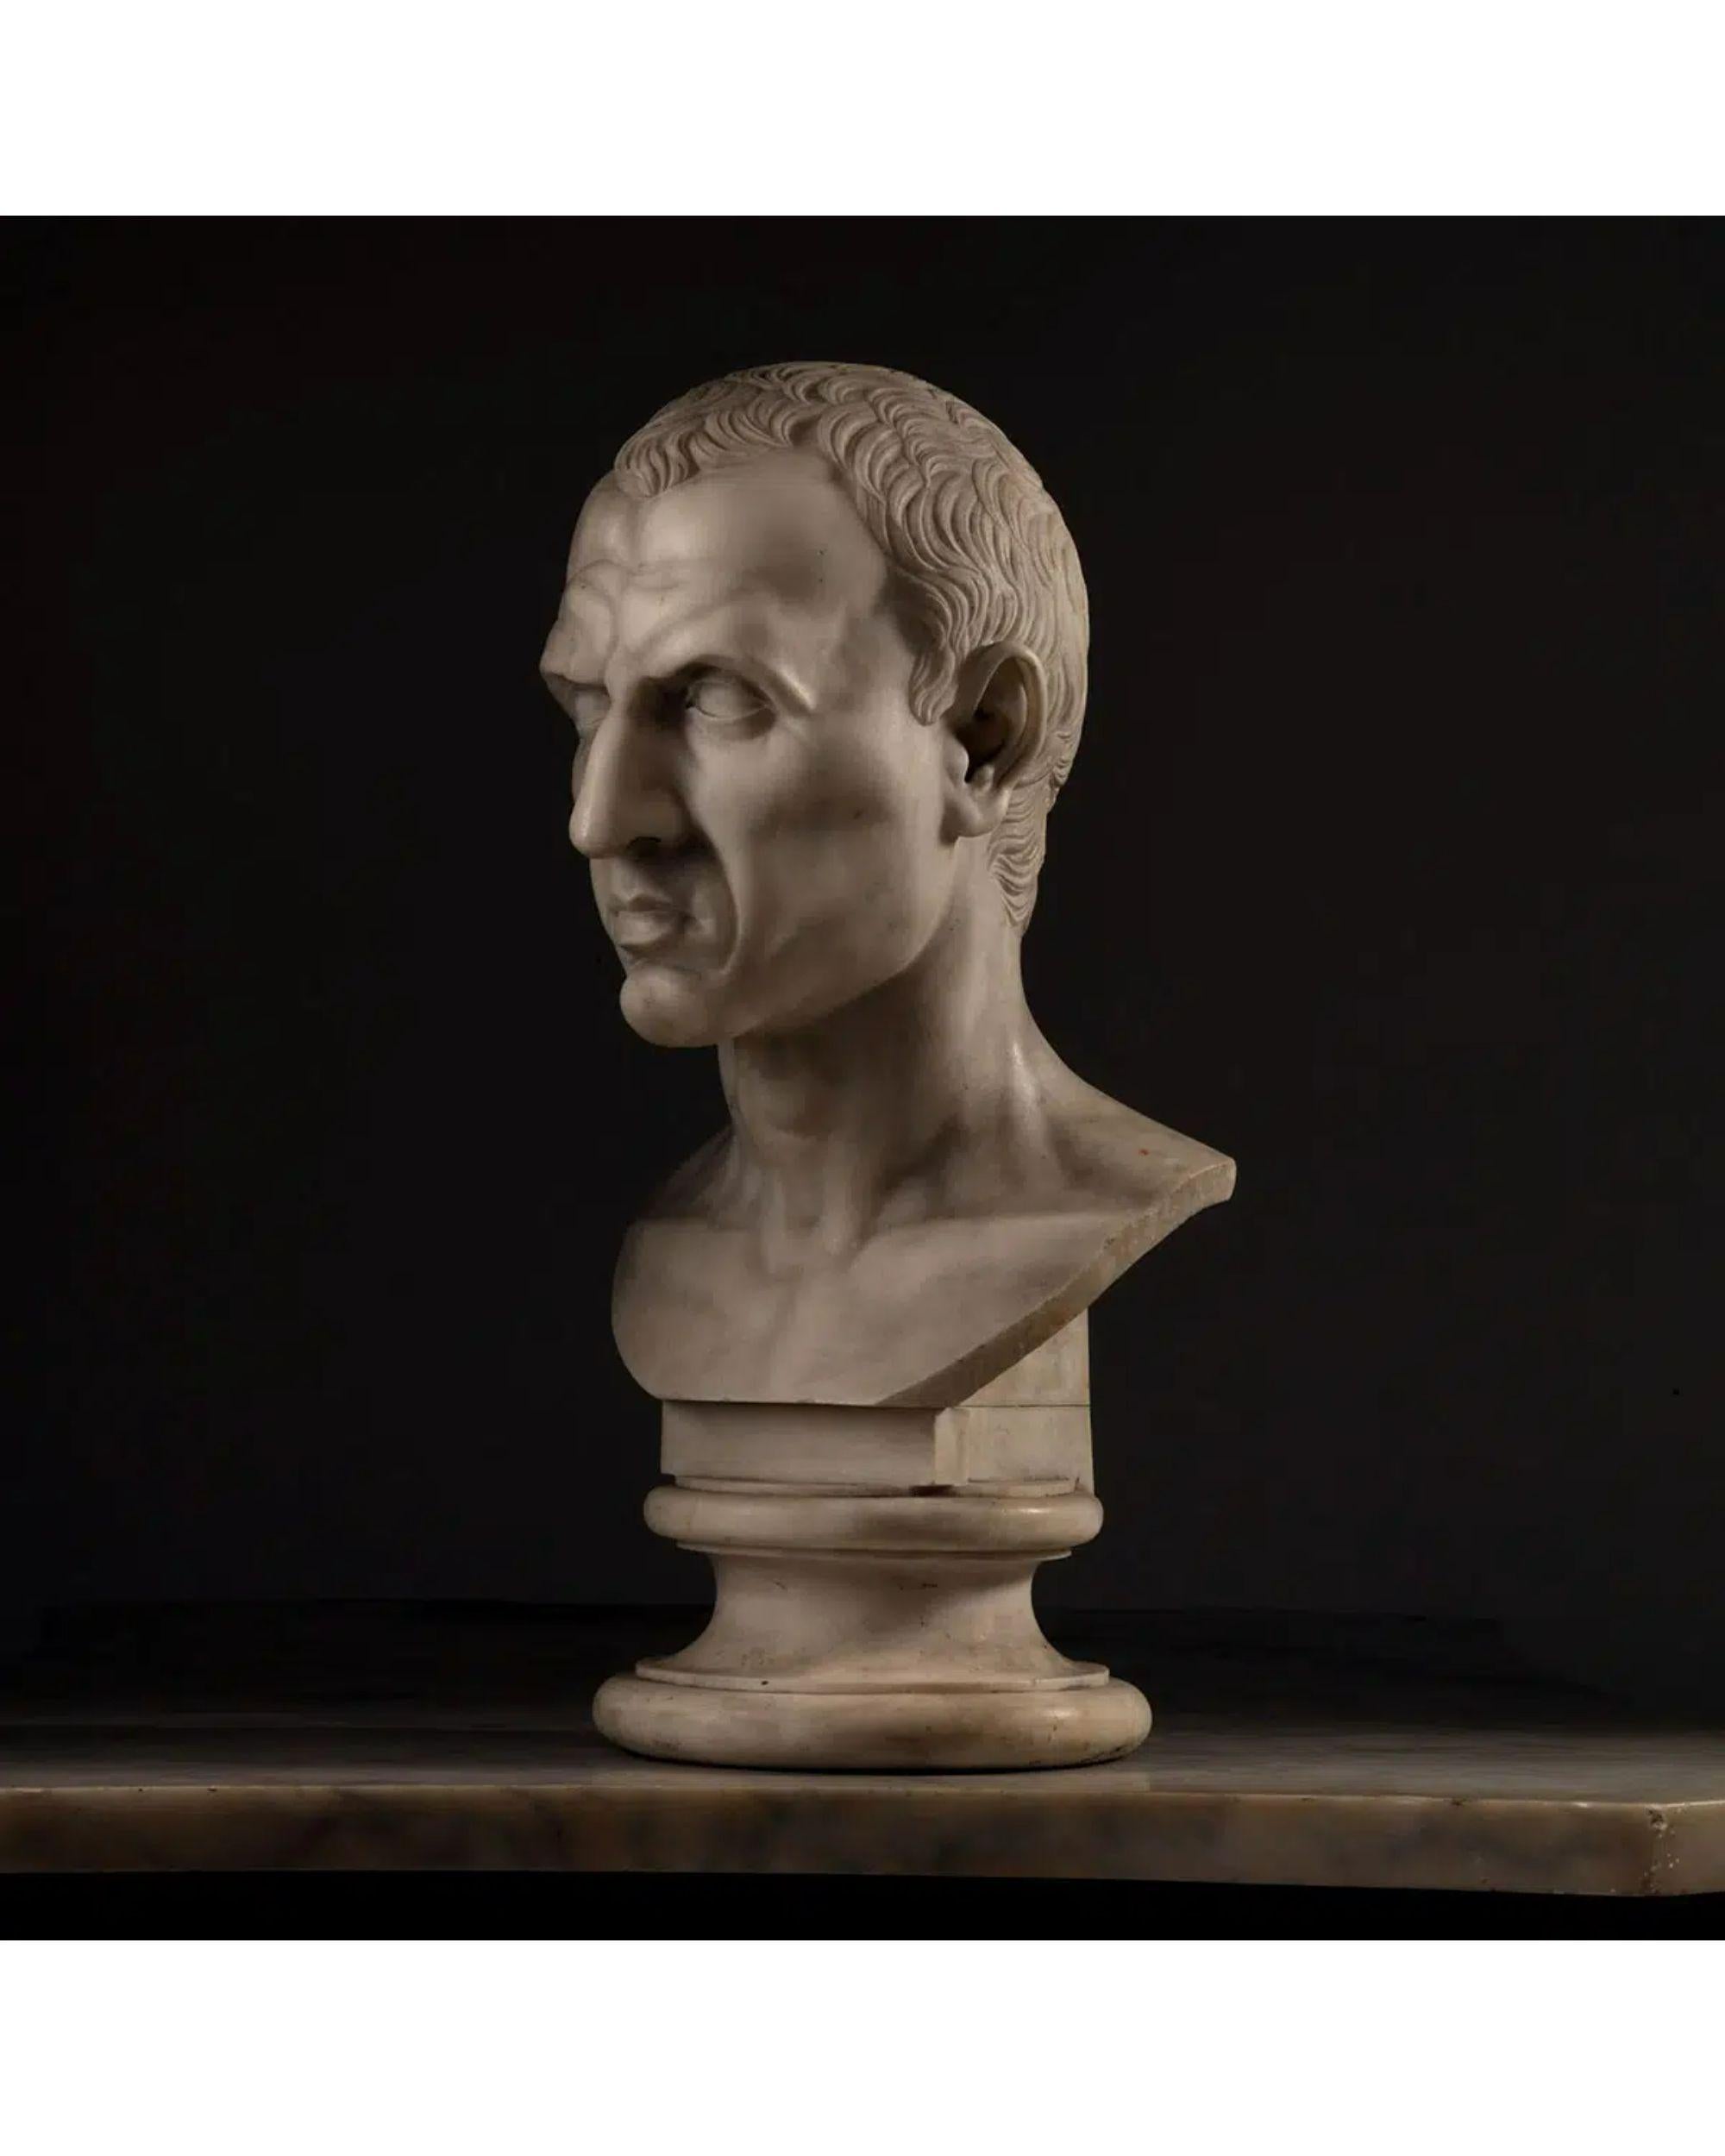 Buste en marbre de Jules César 12 juillet 100 av. J.-C. - 15 mars 44 av.

Buste de Jules César
Jules César était un homme d'État et un général militaire très respecté qui a joué un rôle déterminant dans la fondation de l'Empire romain.
Sculpté dans